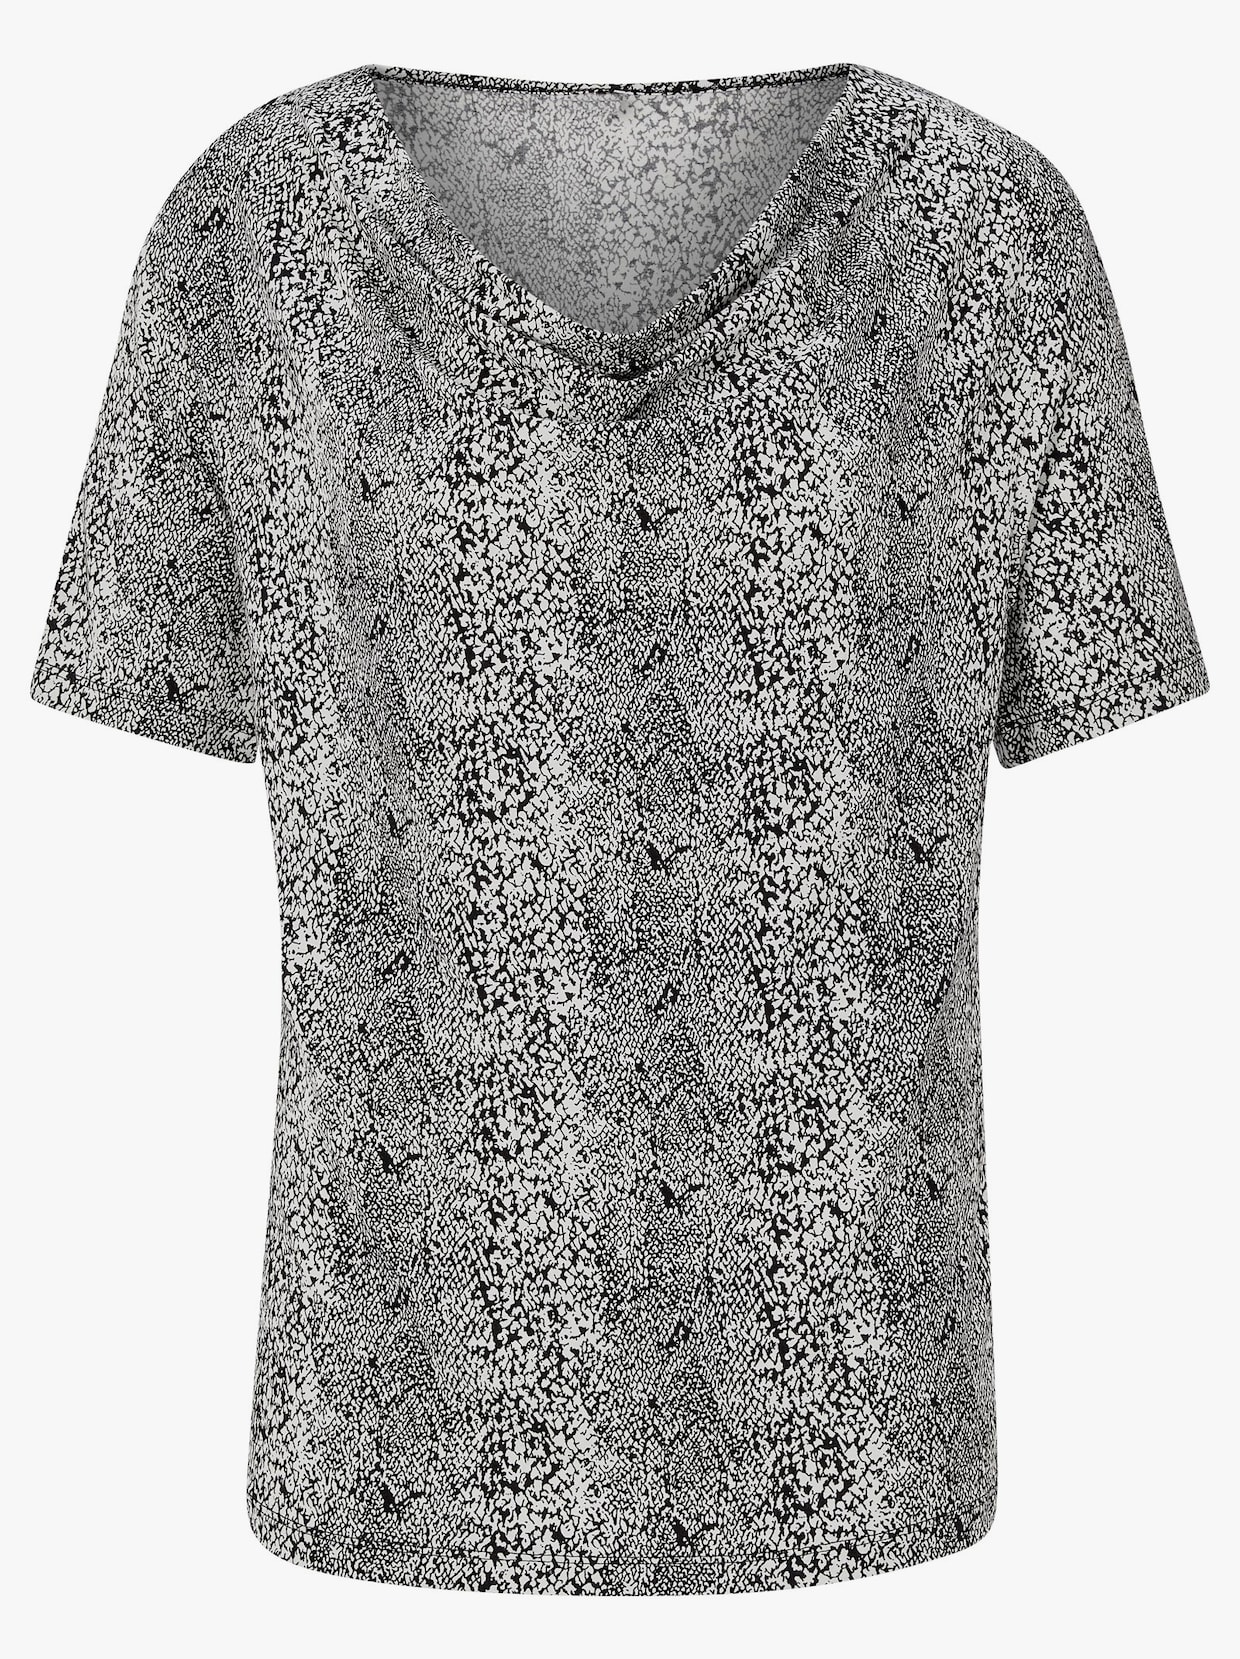 Shirt met cascadehals - zwart/wit geprint